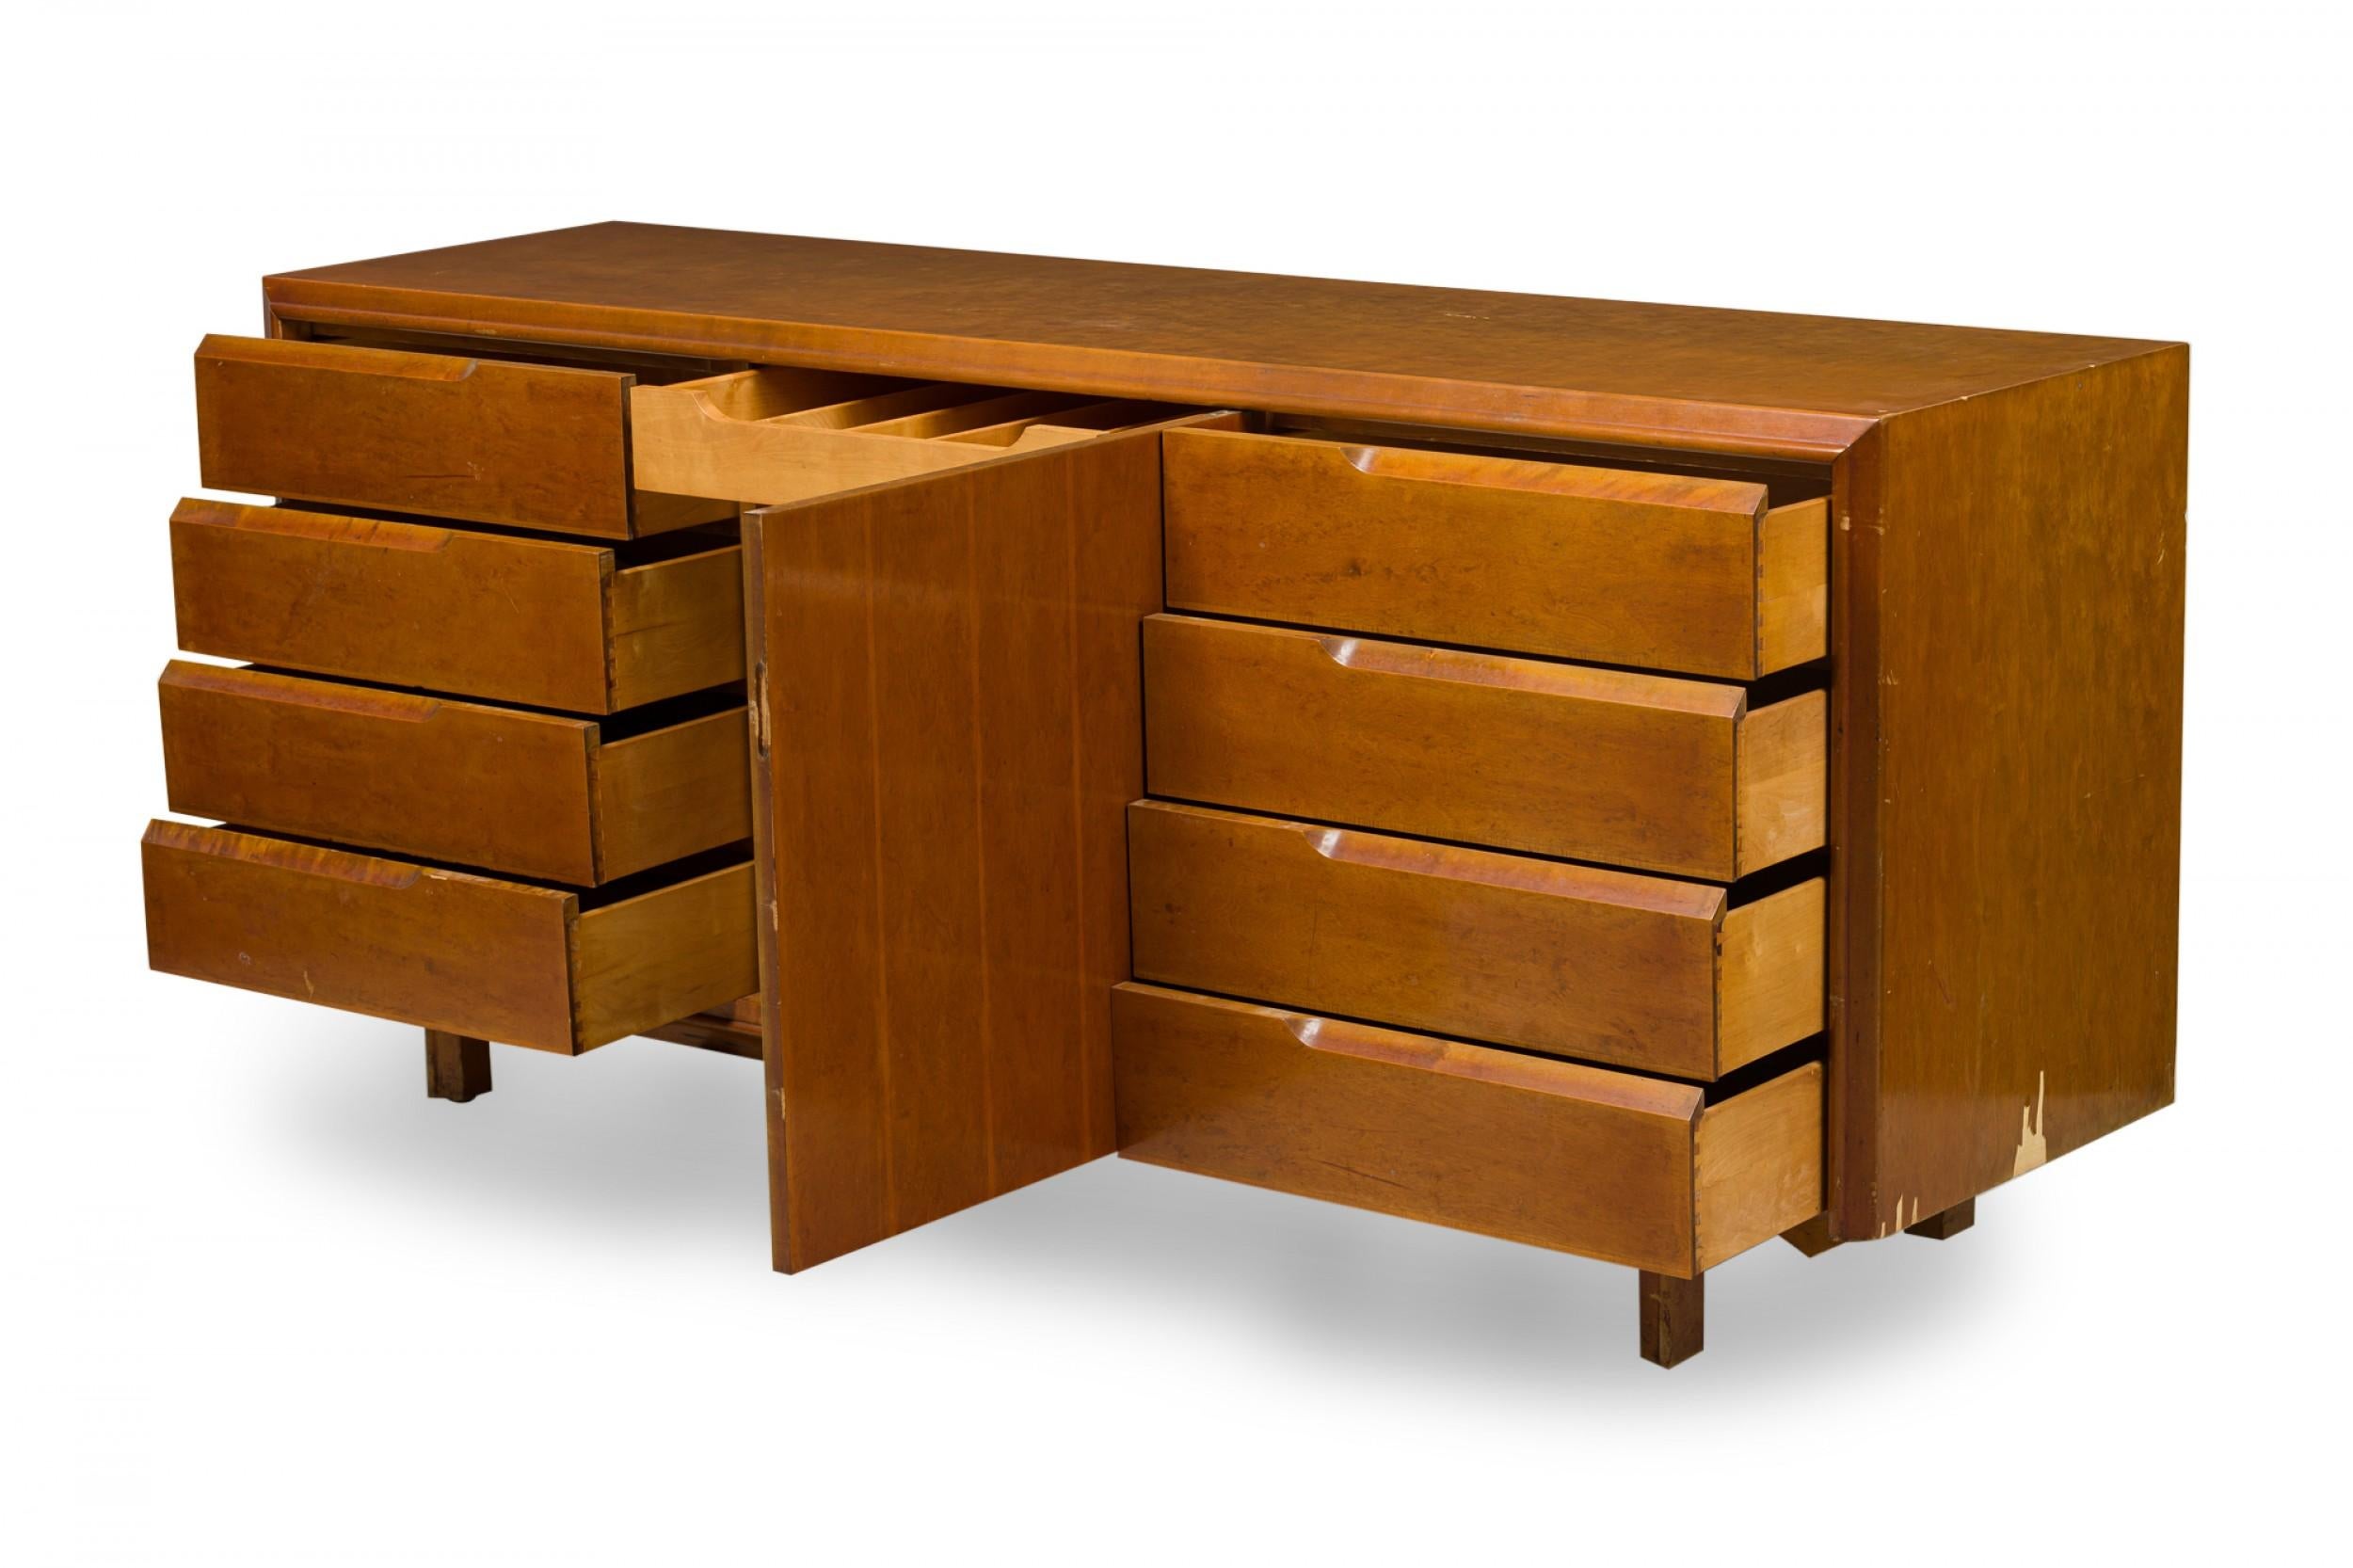 20th Century Eero Saarinen Finnish Modern Inlaid Birch and Maple Sideboard Dresser For Sale